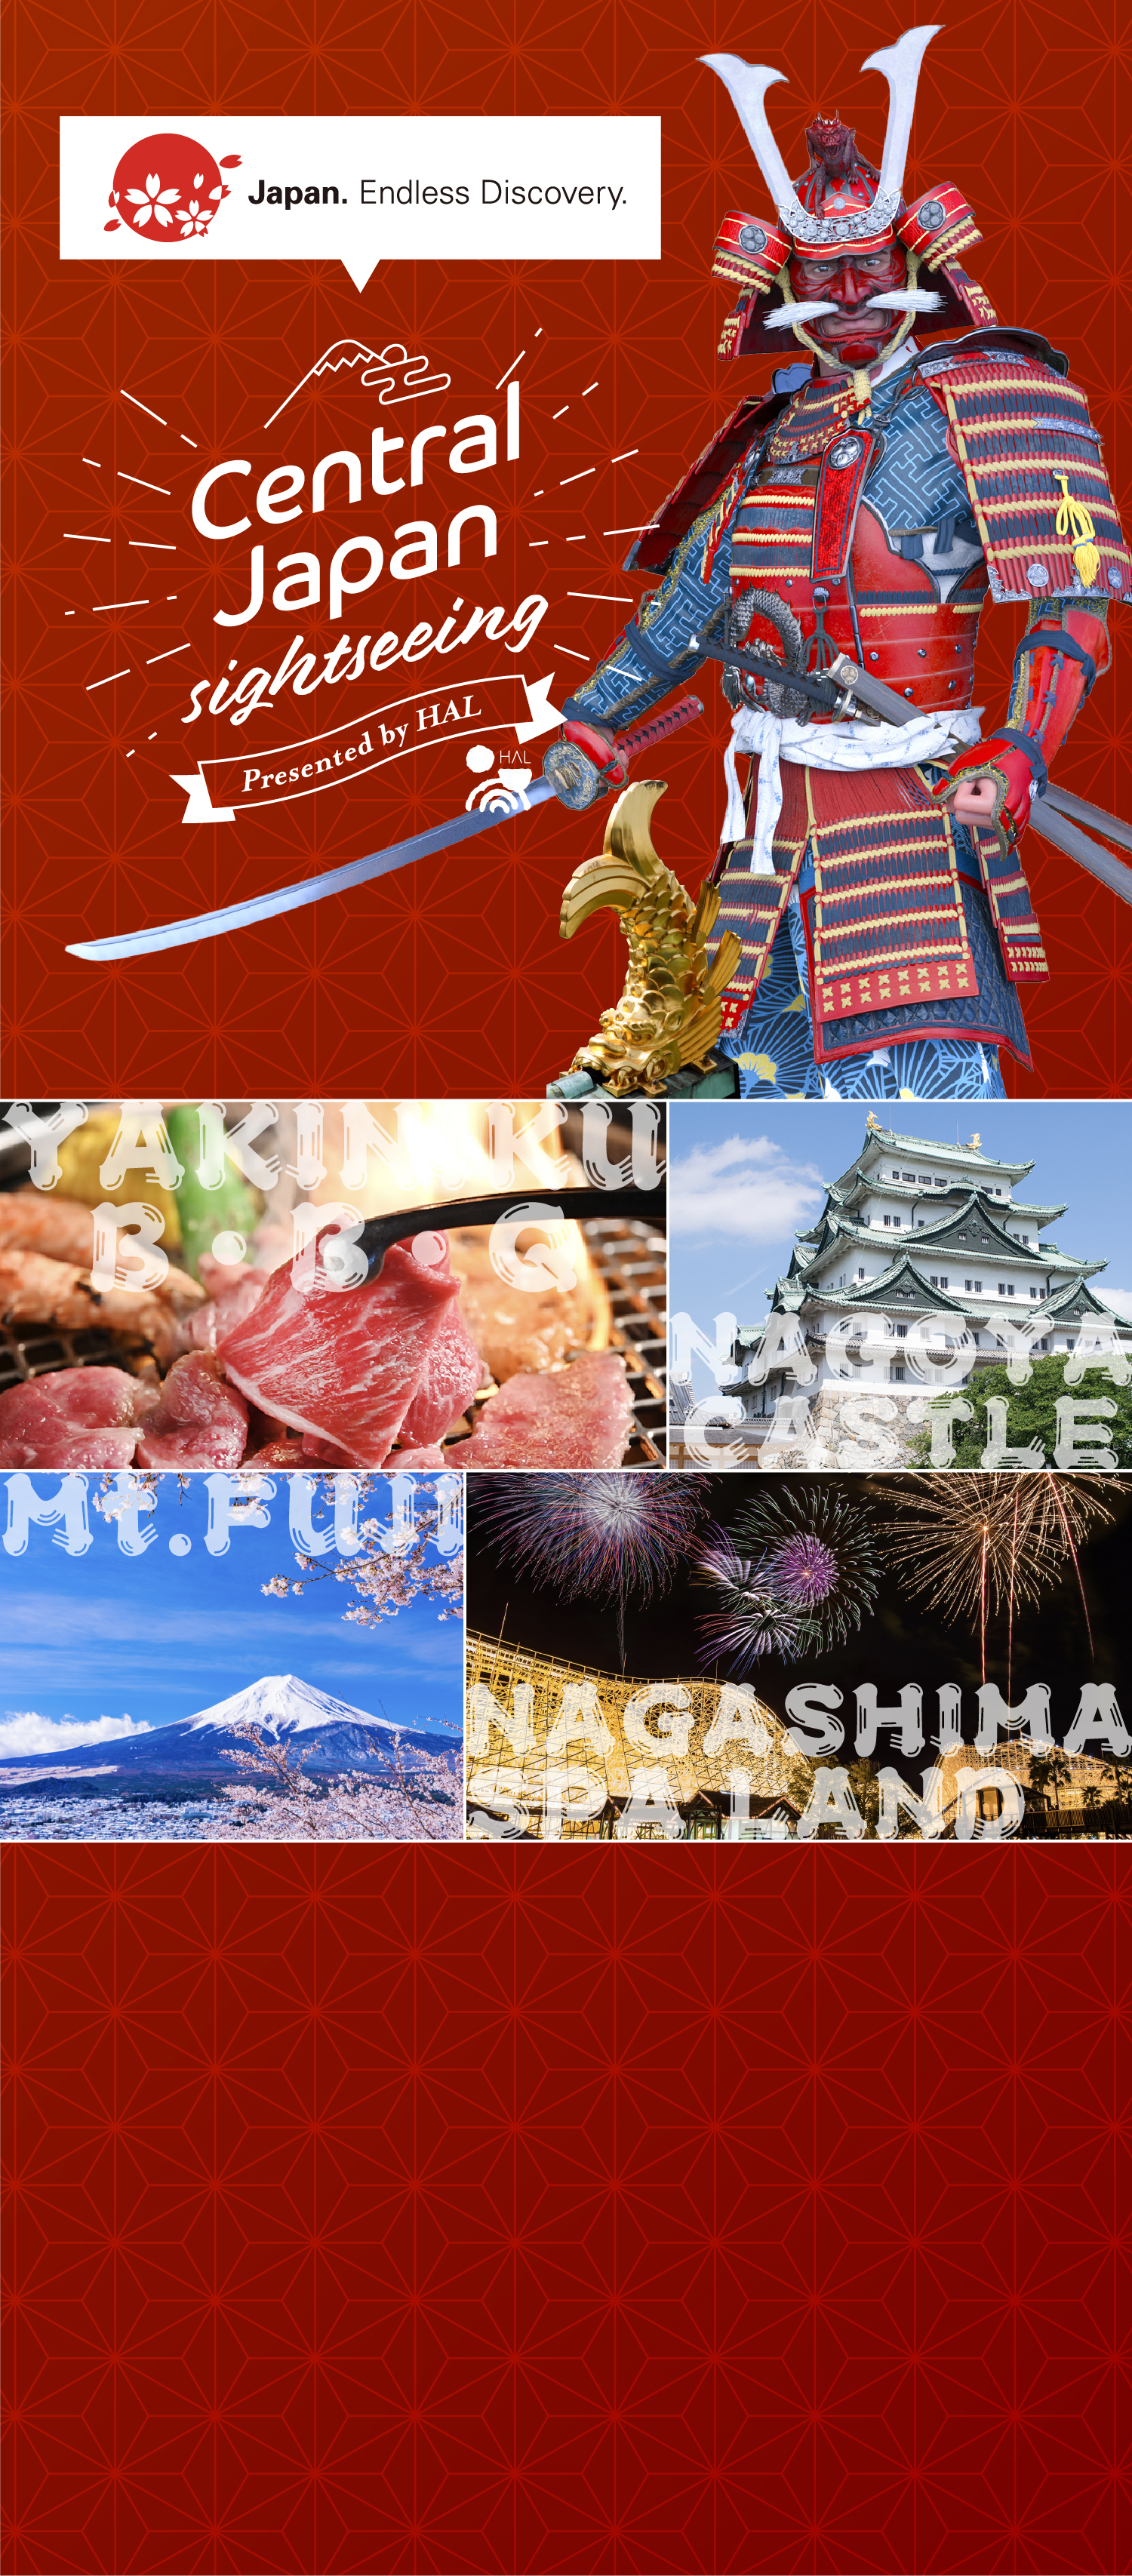 중일본에는 일본 문화를 체감할 수 있는 중요문화재와 웅대한 자연이 가득합니다!중일본 각 지역의 관광명소를 소개함과 동시에, 일본을 여행하실 때 꼭 한 번 들러서맛보시도록 저희가 추천하는 일본‘야키니쿠’의 매력을 전수합니다!